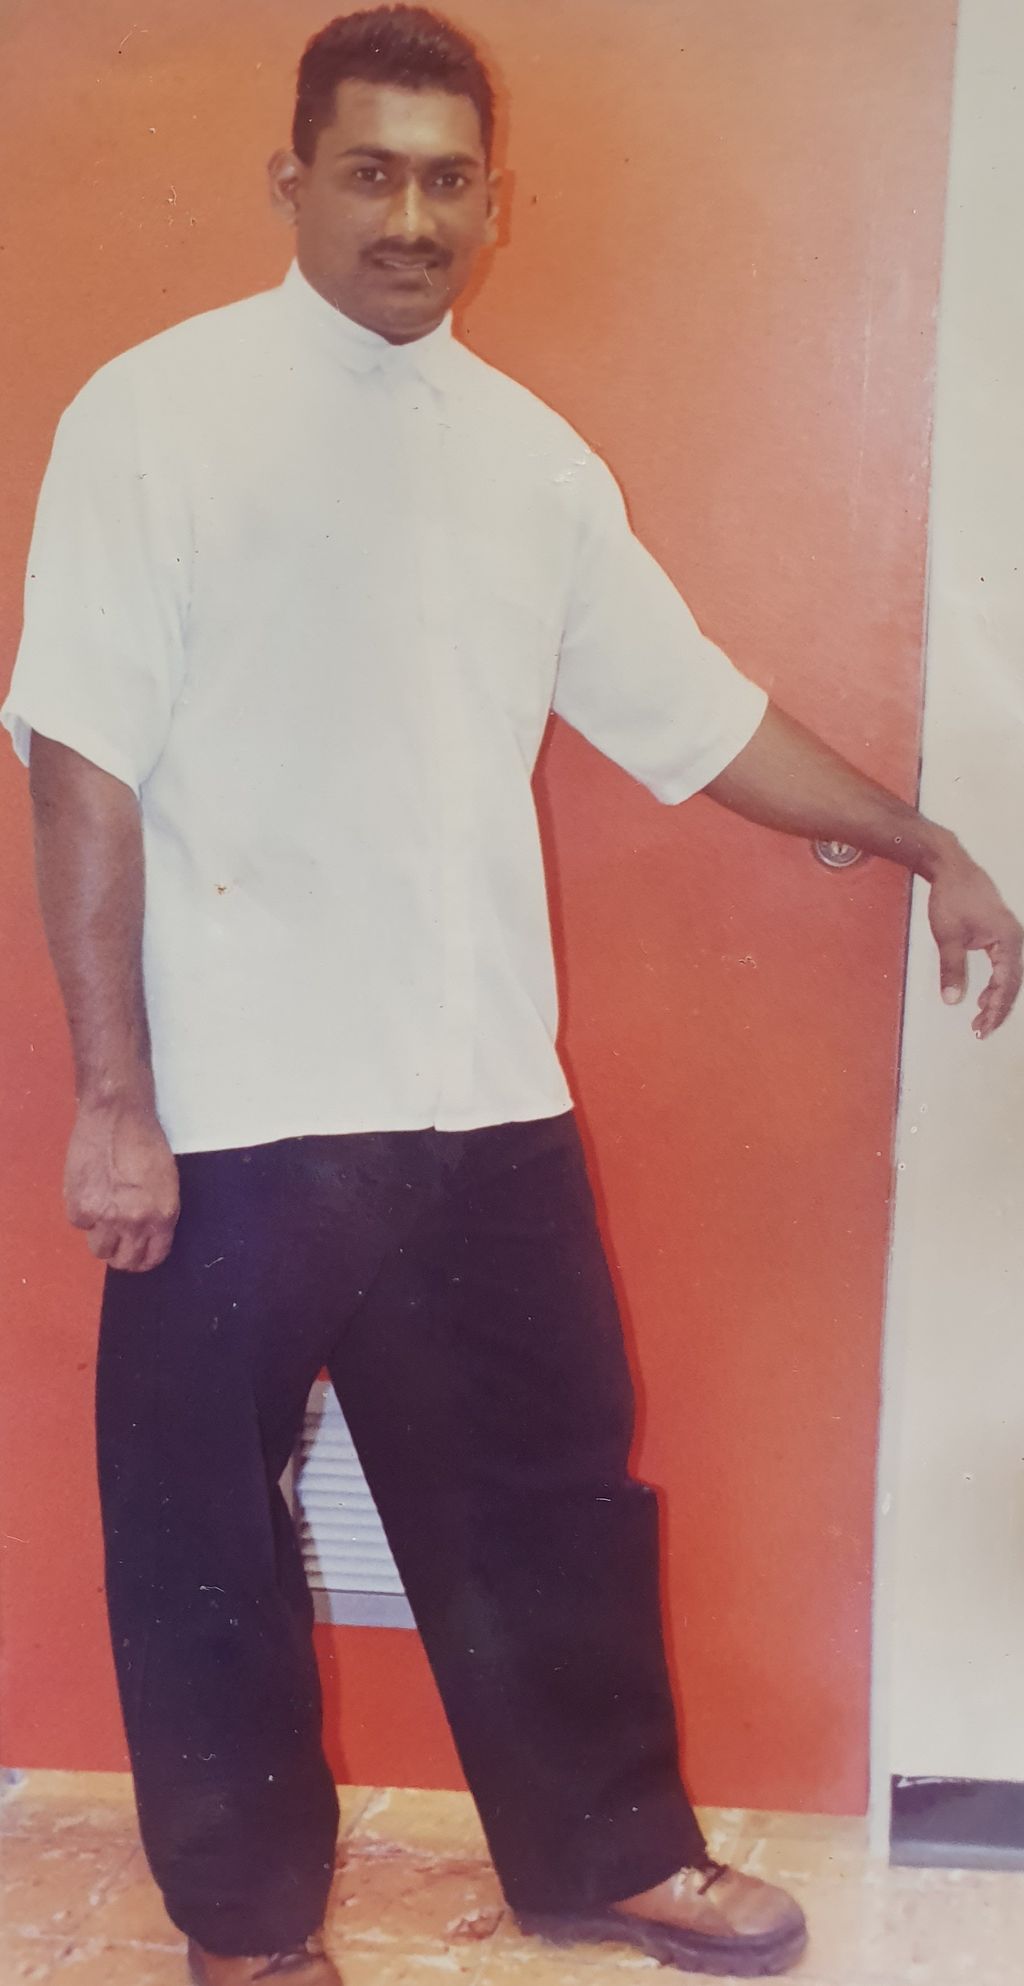 Lumberer, friend found murdered in Cumuto - Trinidad Guardian